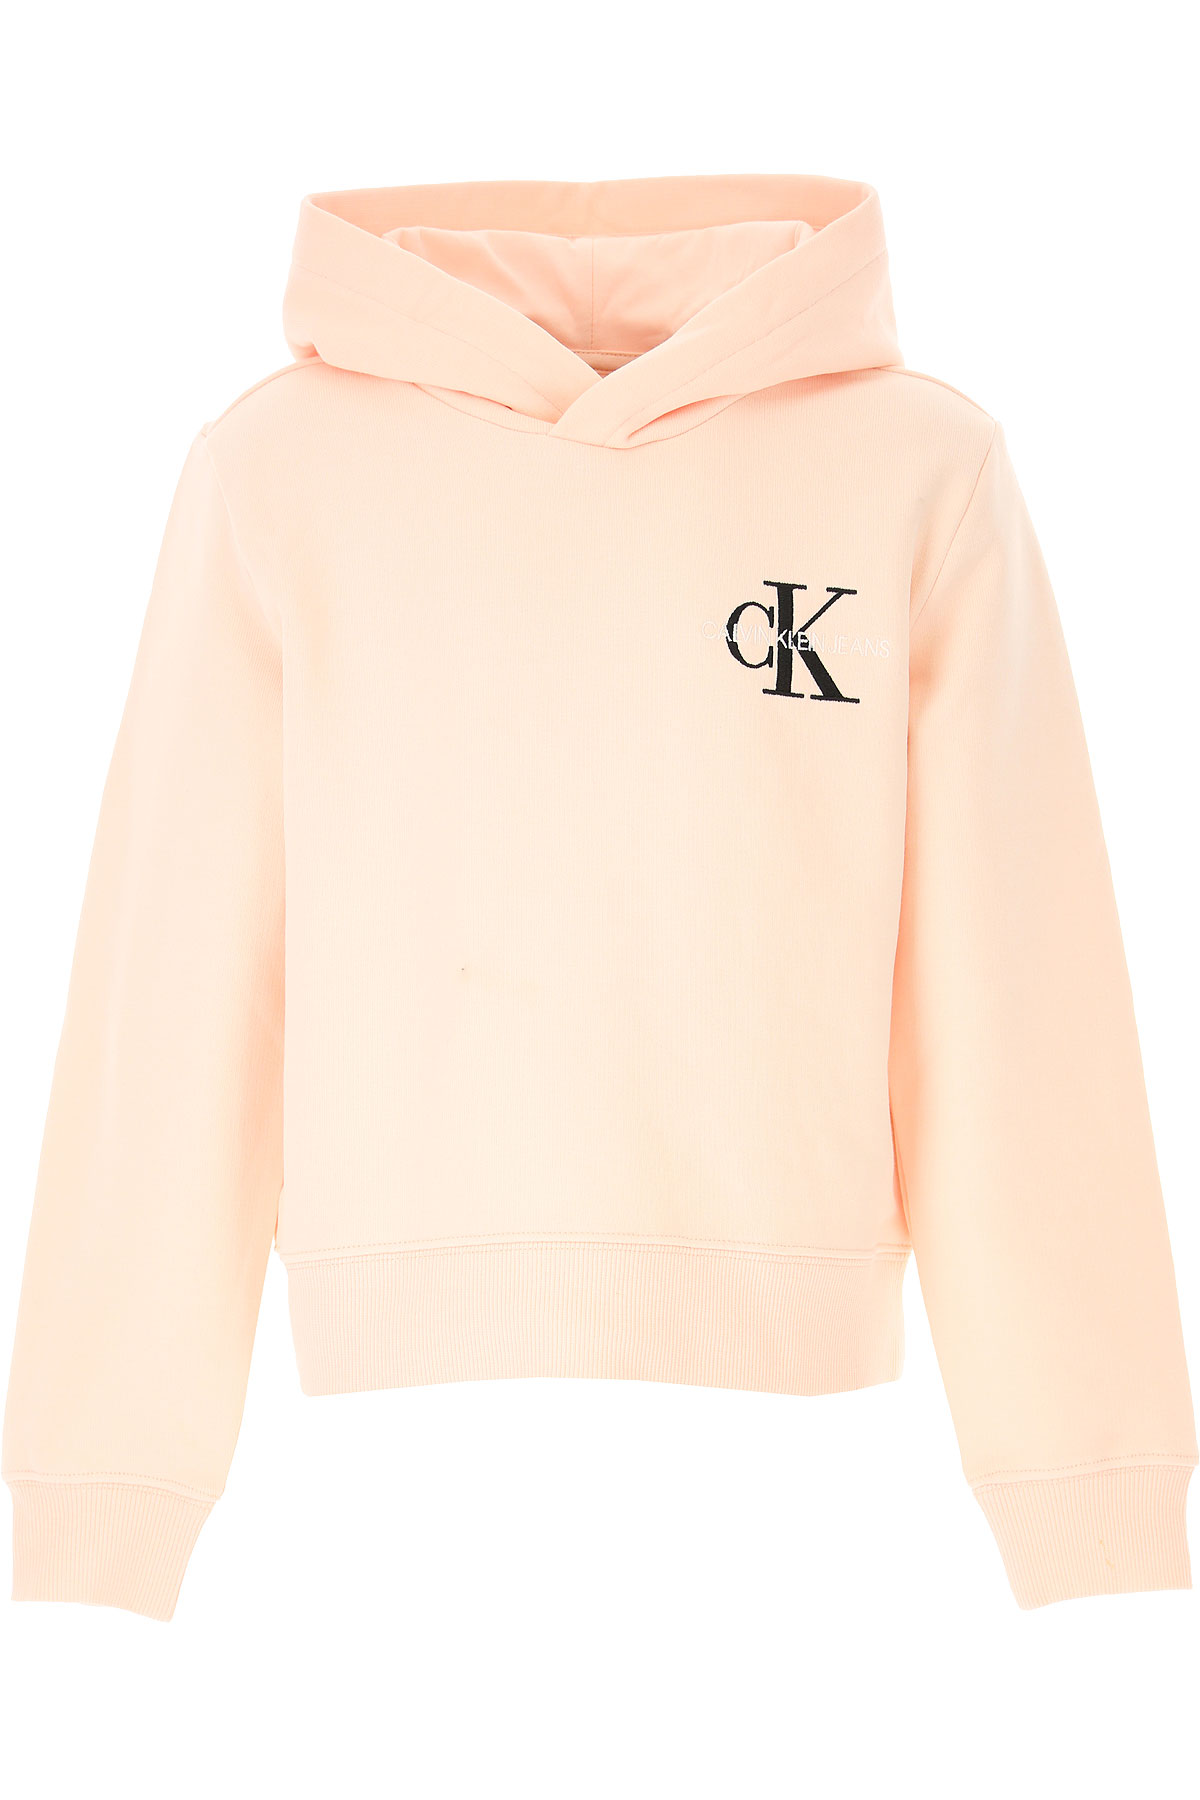 Calvin Klein Kinder Sweatshirt & Kapuzenpullover für Mädchen Günstig im Sale, Perlen Plüsch, Baumwolle, 2017, 12Y 14Y 4Y 6Y 8Y